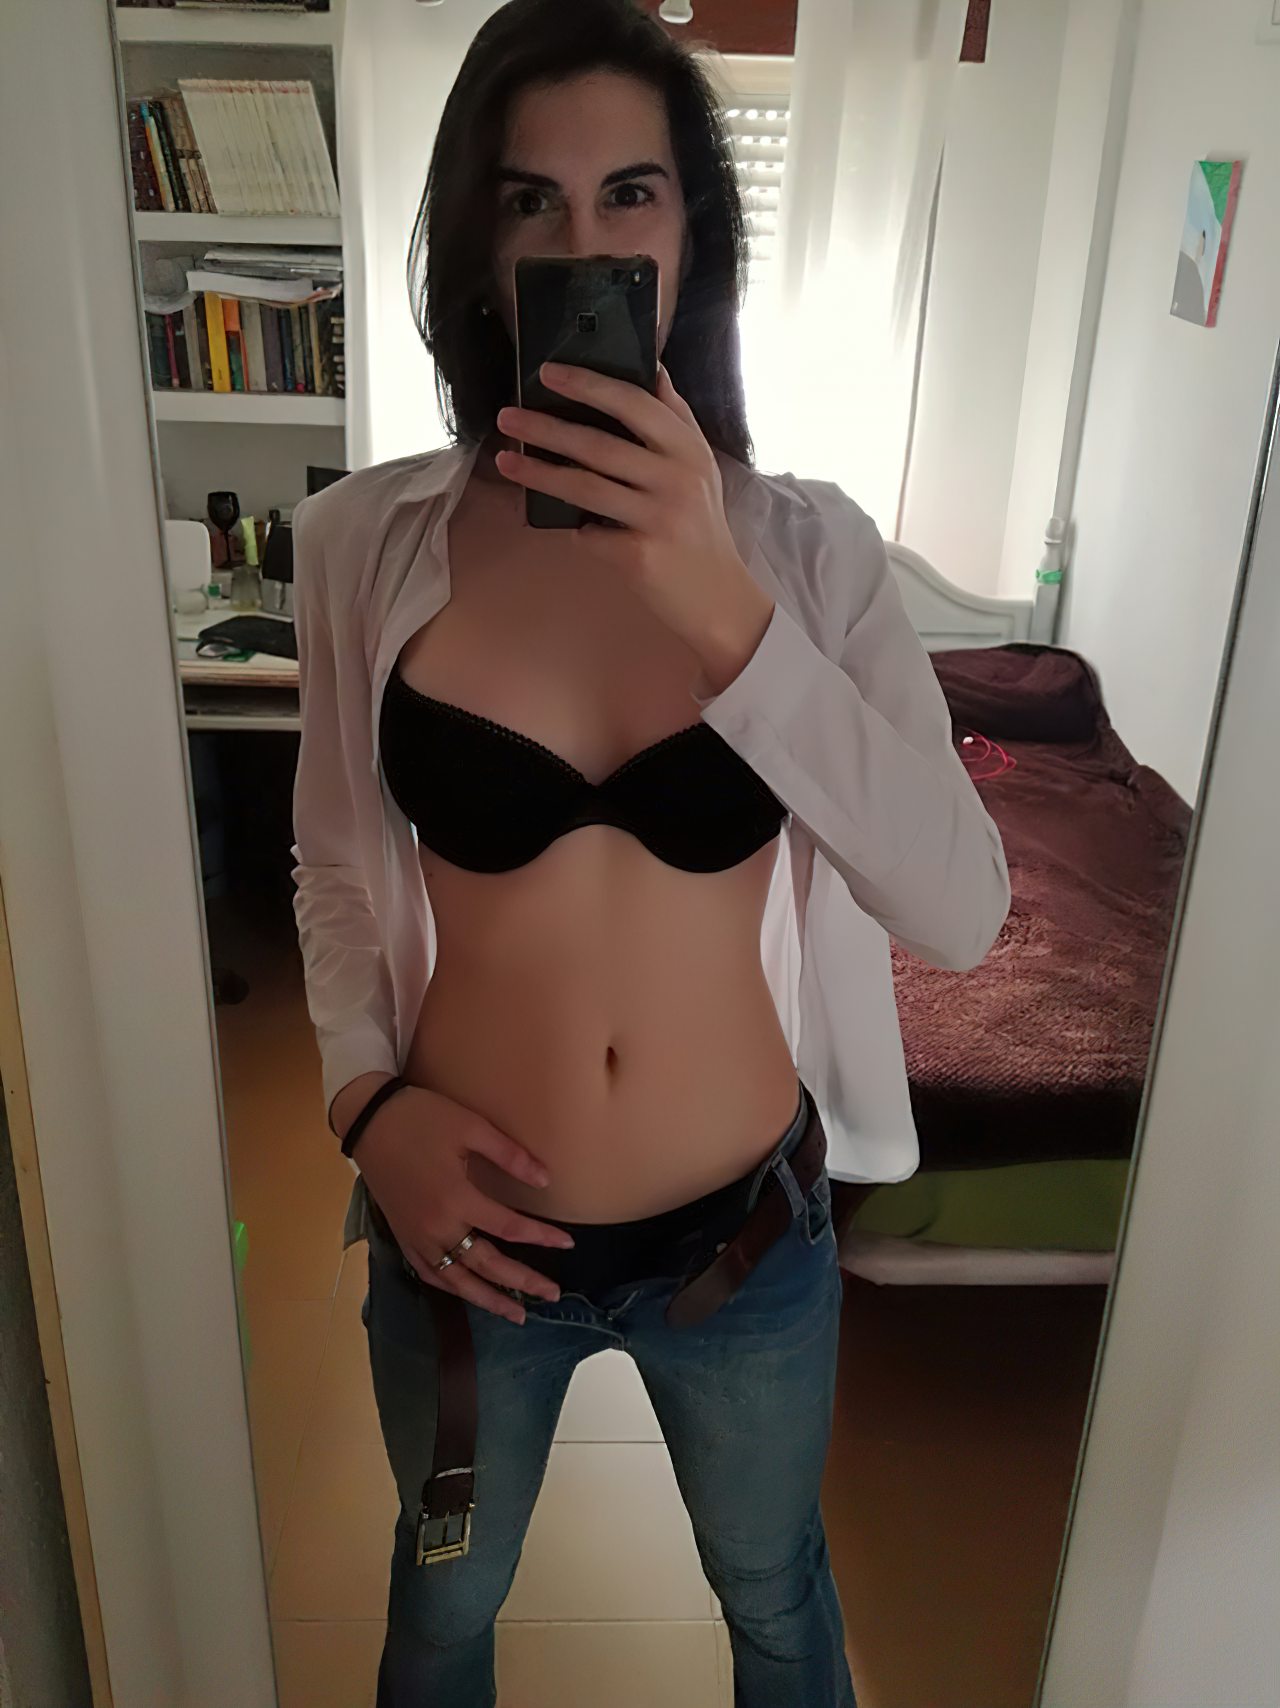 Travesti Adolescente Mostrando Corpo (2)